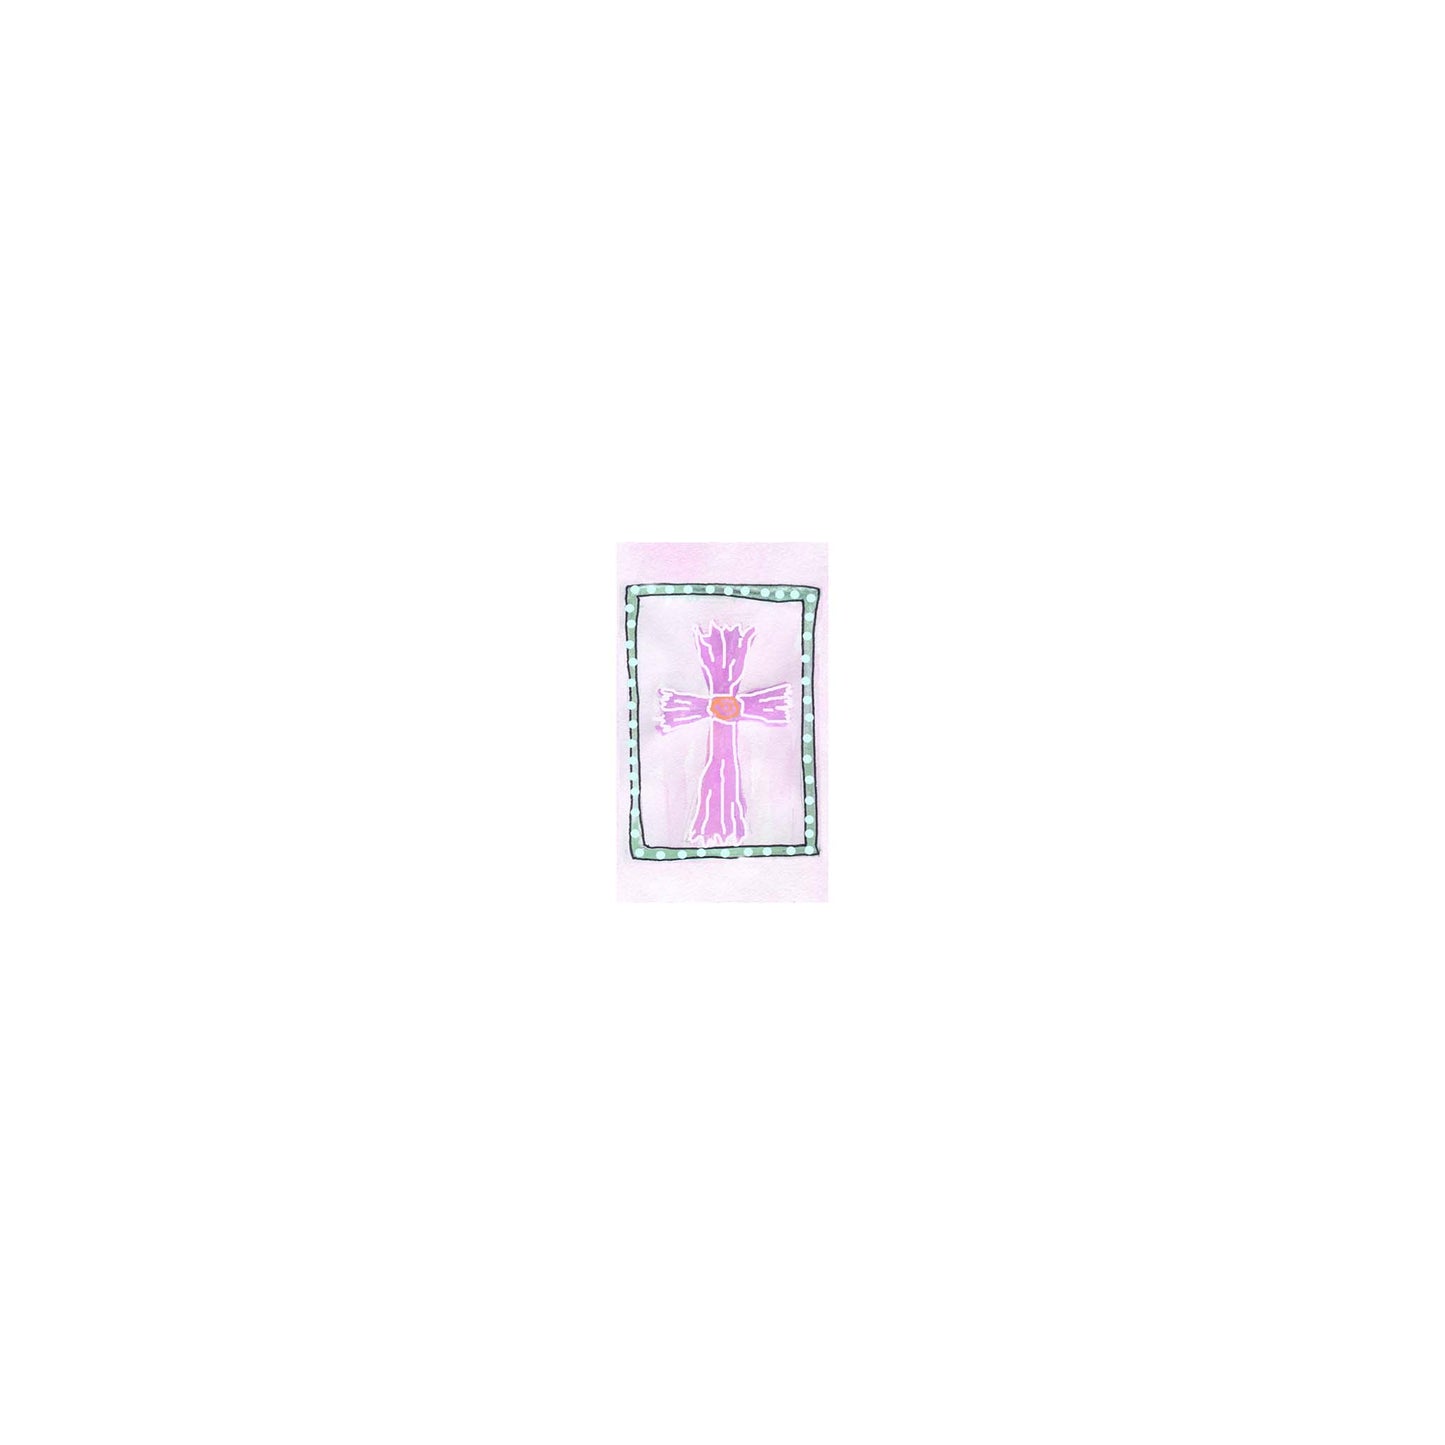 Bright Pink - Pink Cross Mini Bookmarks (40 mini bookmarks)